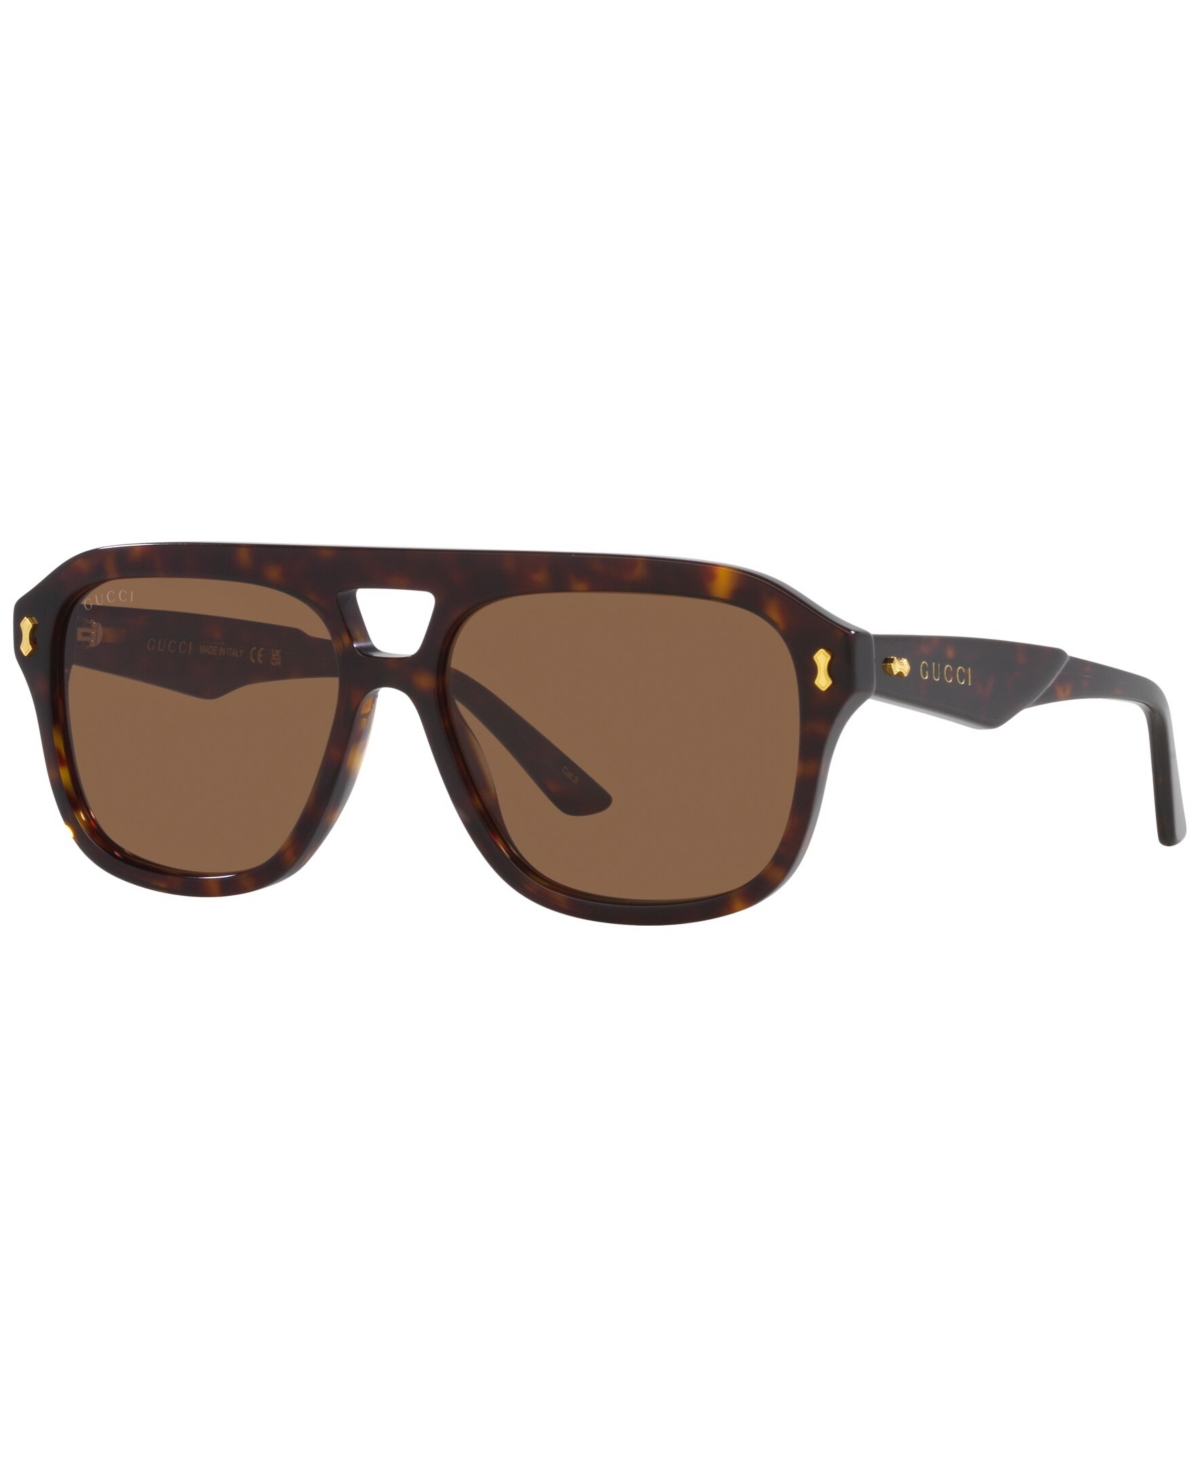 Gucci Men's Sunglasses, Gg1263s In Tortoise